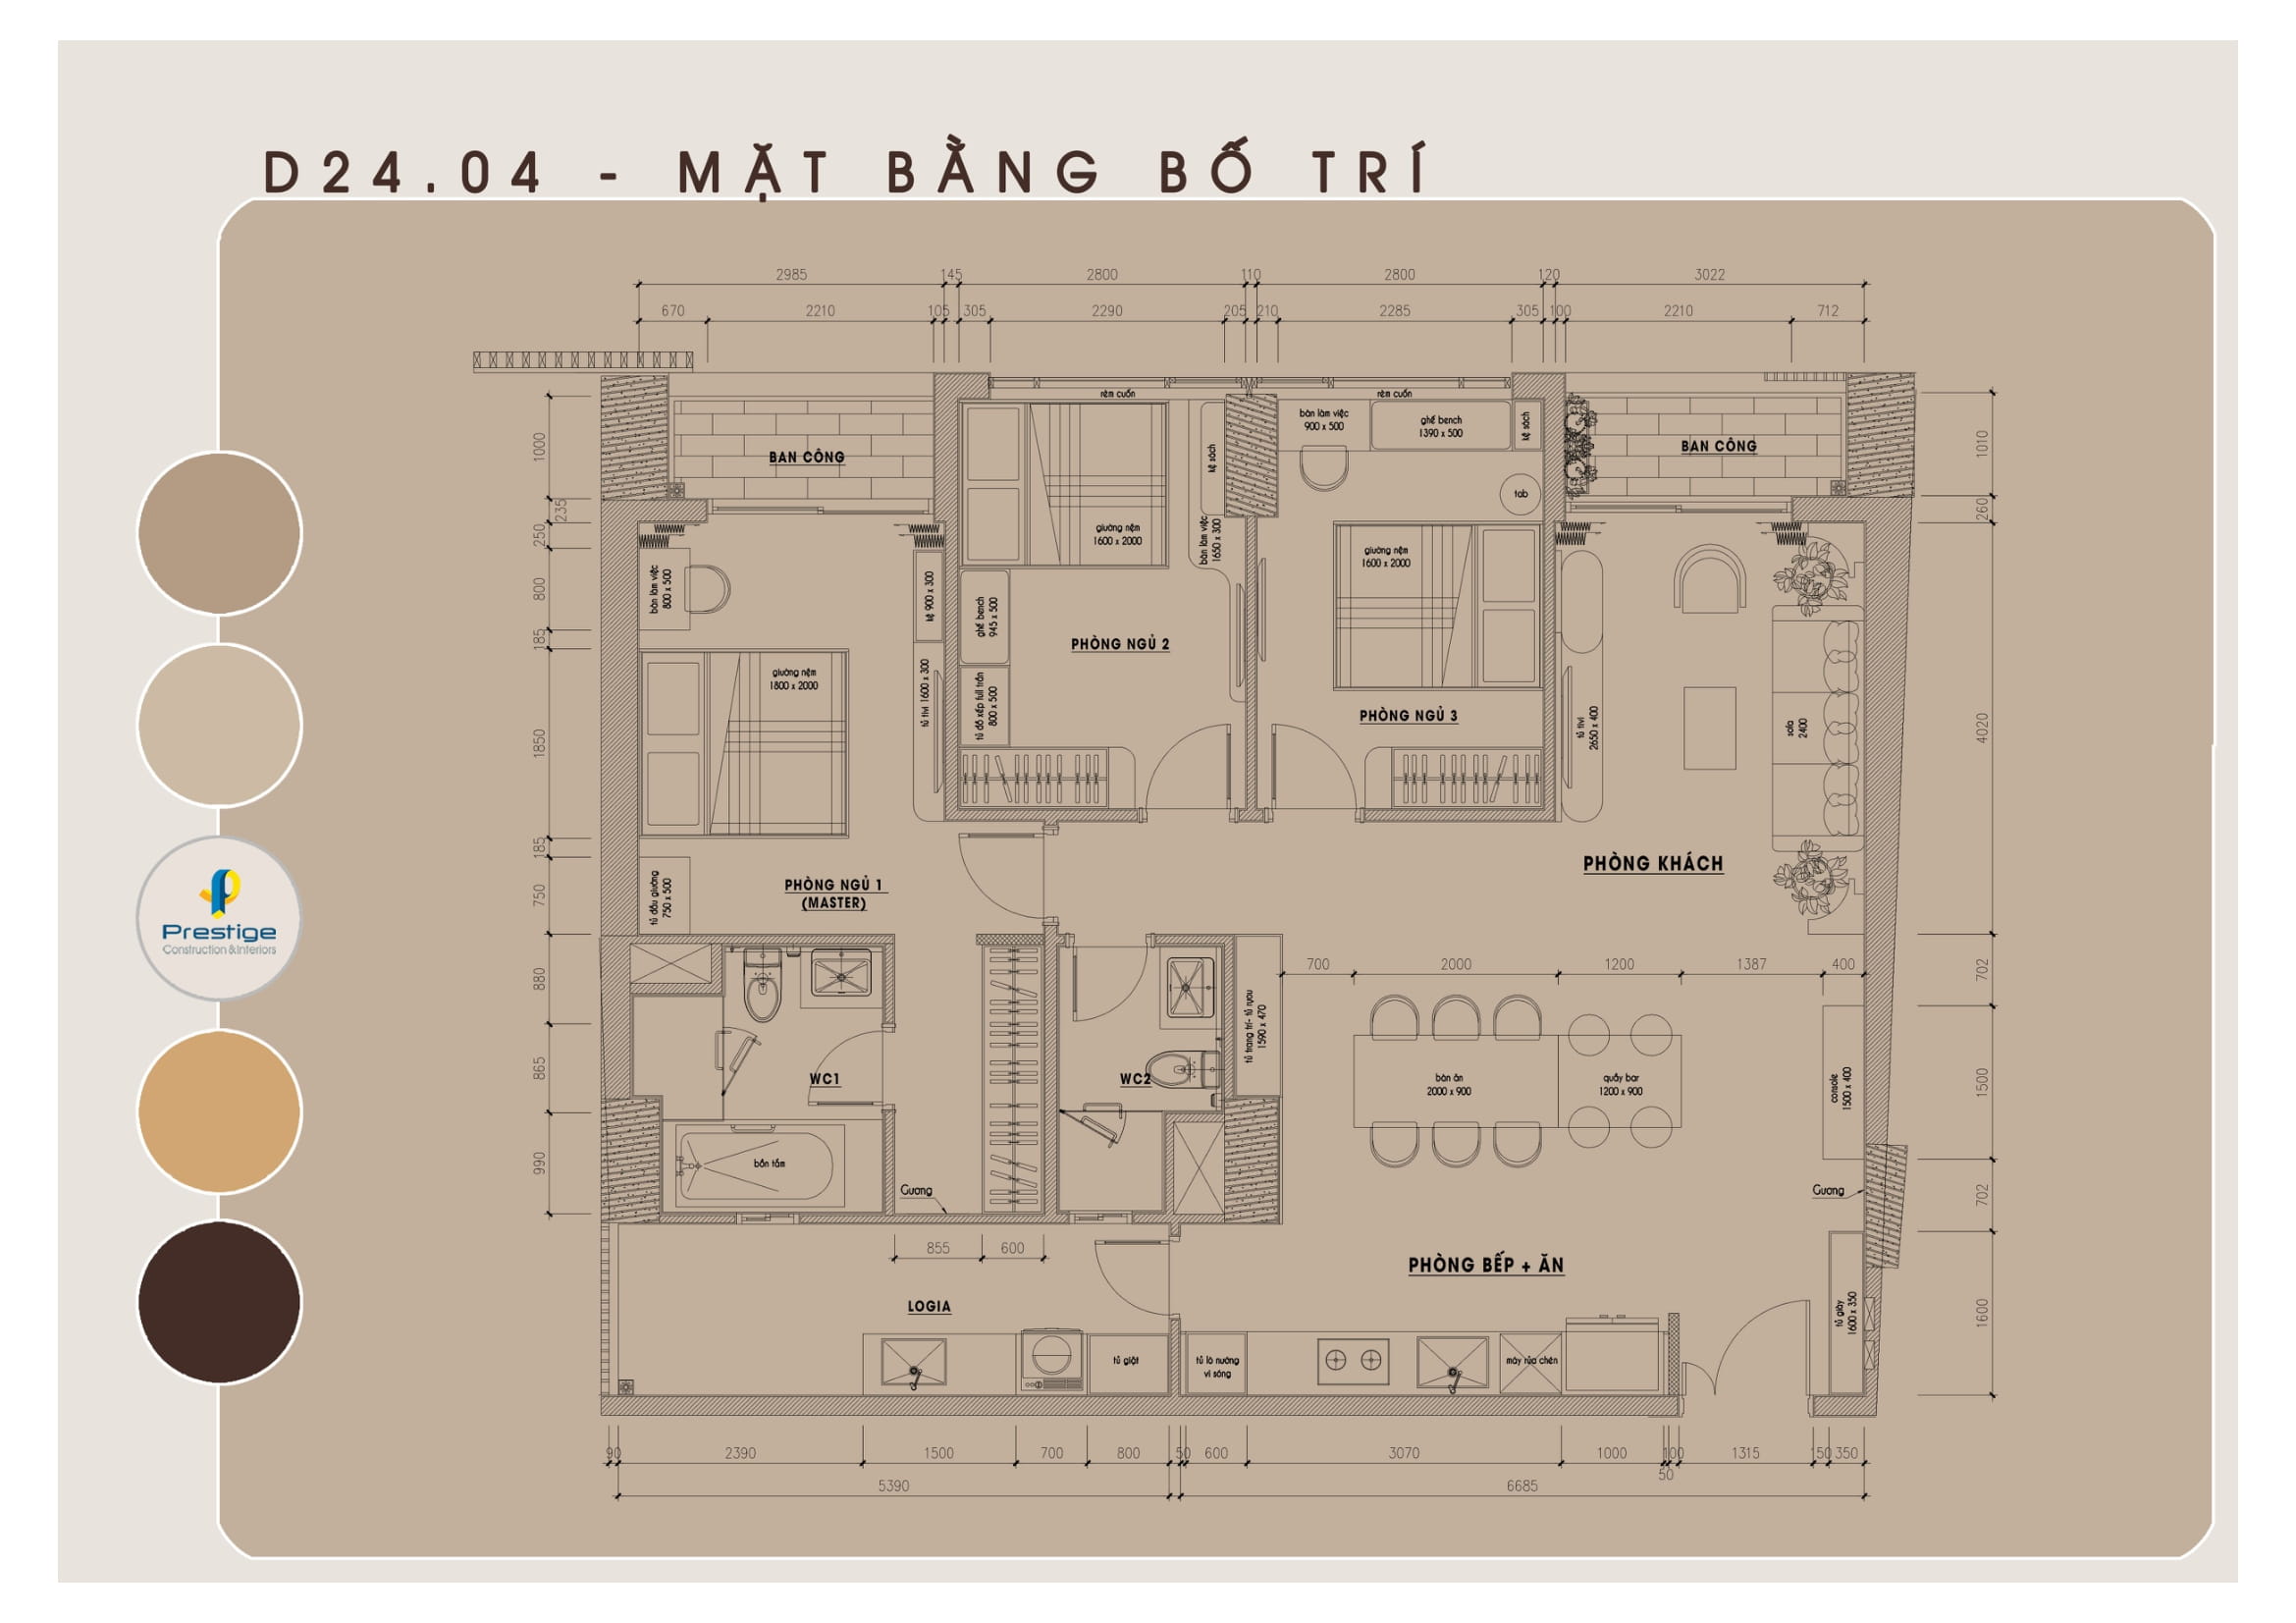 Khám phá ý tưởng thiết kế căn hộ mẫu thực tế The Peak Midtown D24.04